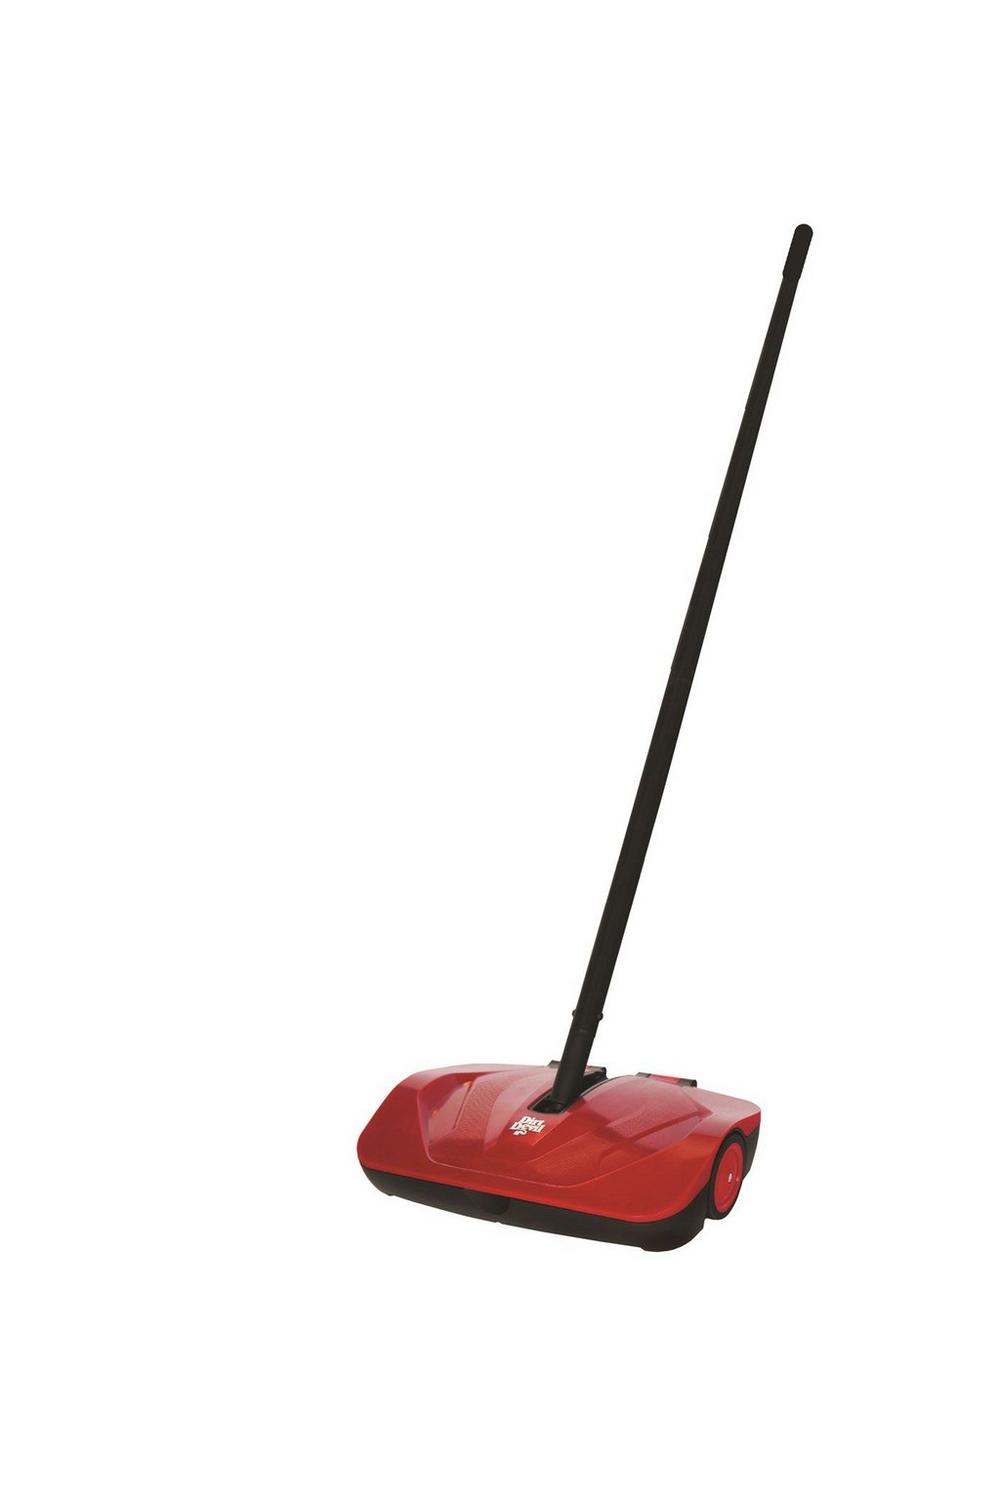 Simpli Sweep Push Sweeper Dirtdevil